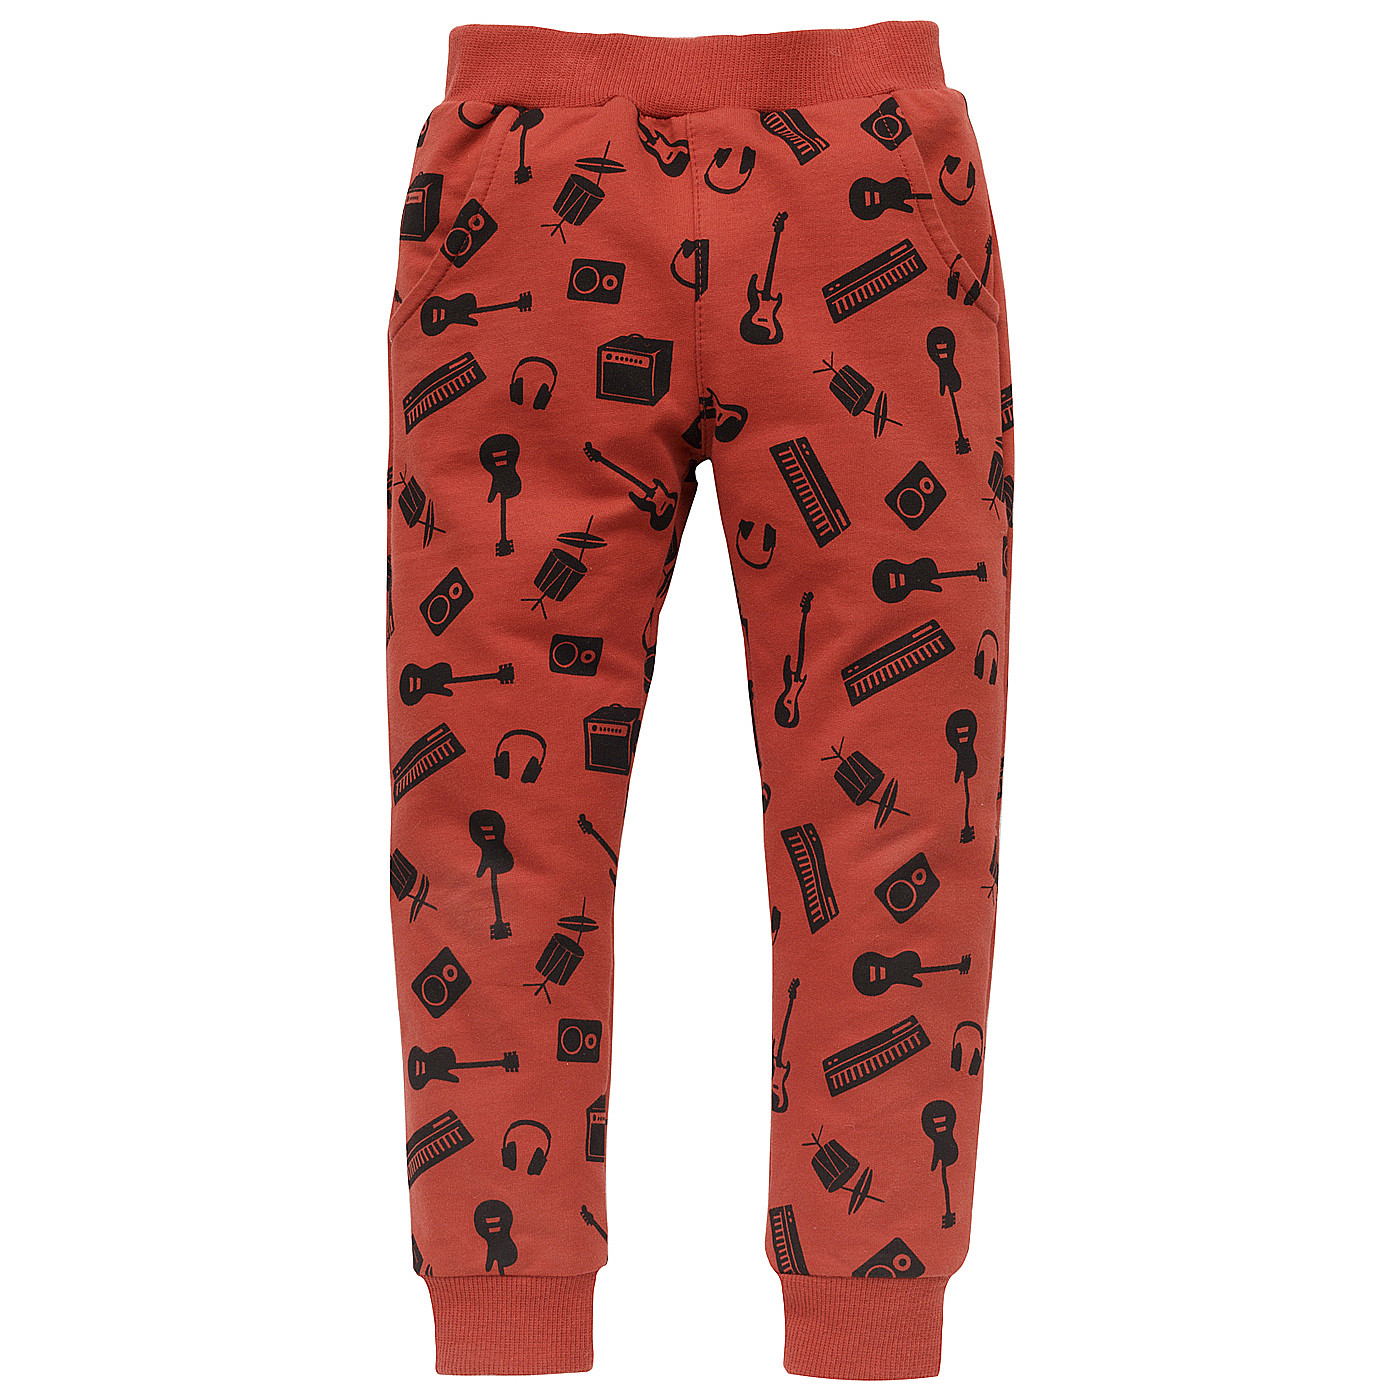 Pinokio Let's Rock Pants Red (Červené kalhoty) 110